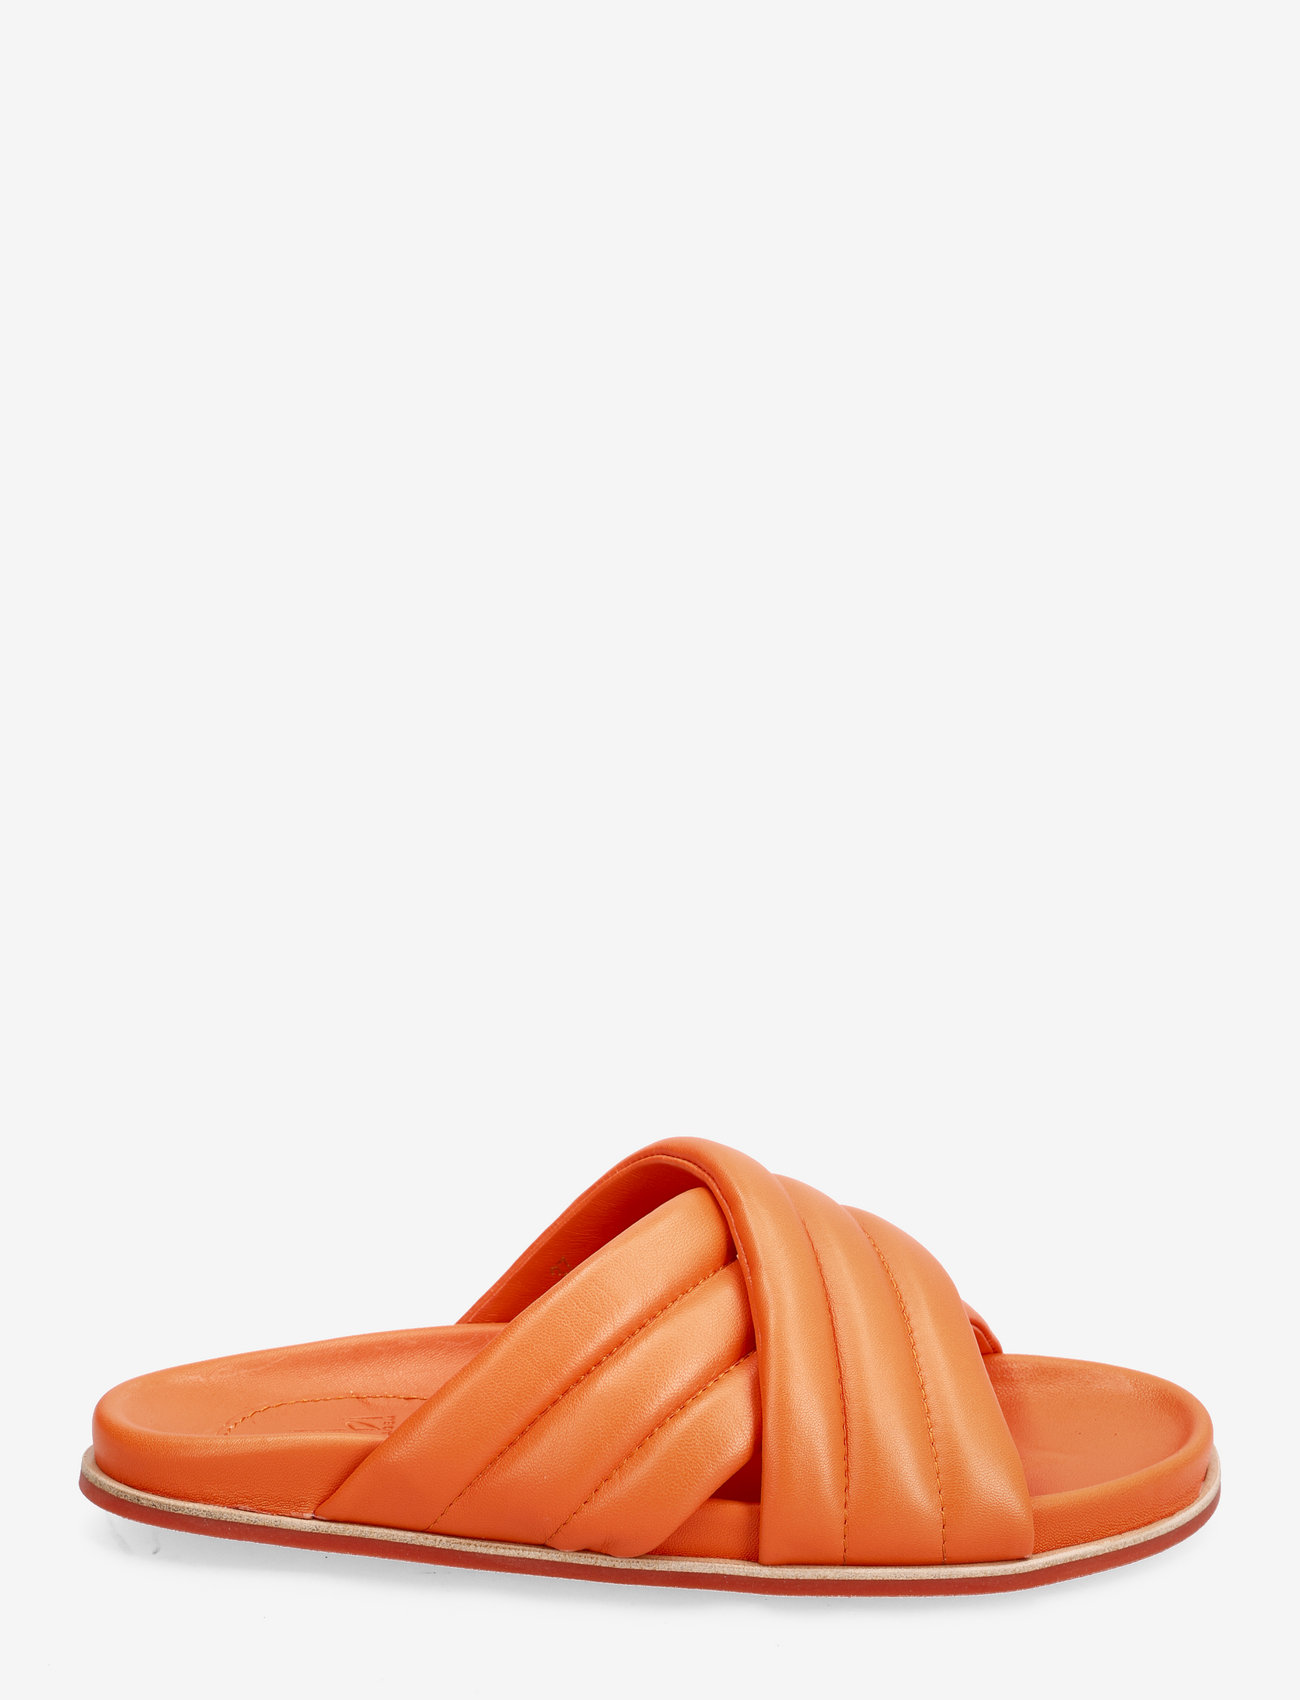 Billi Bi - C5573 - flat sandals - orange nappa - 1